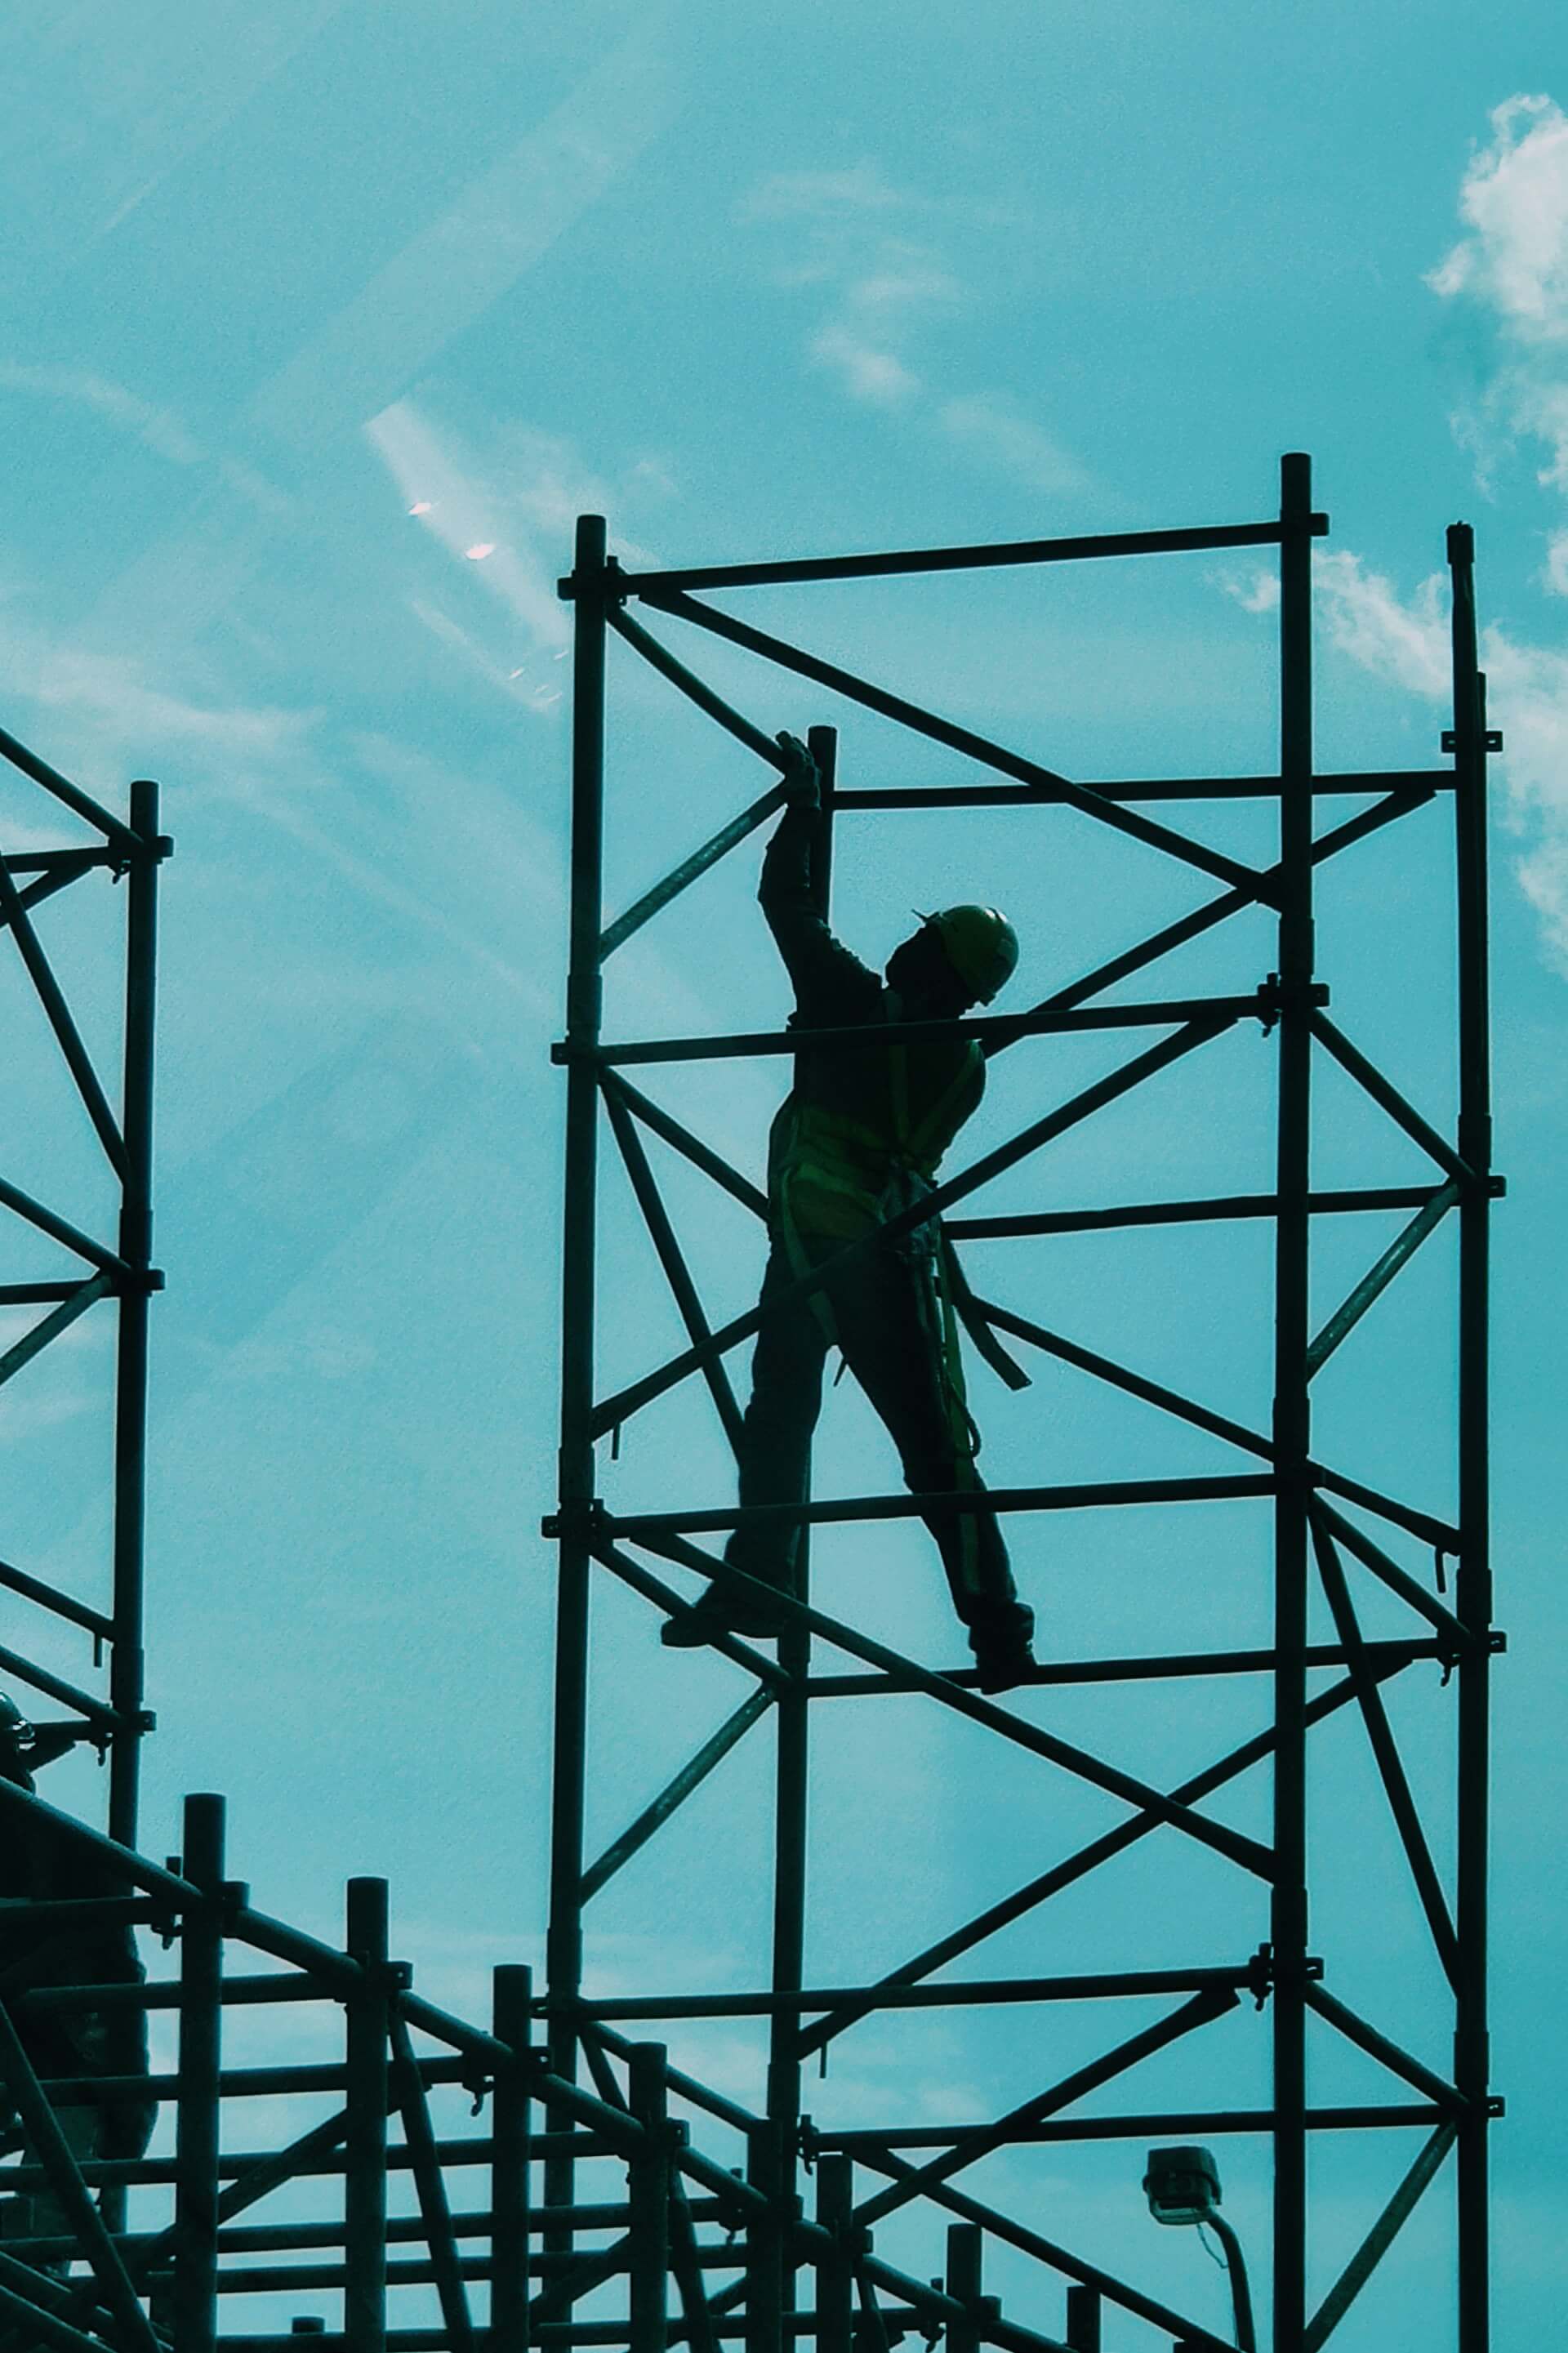 Worker on scaffold